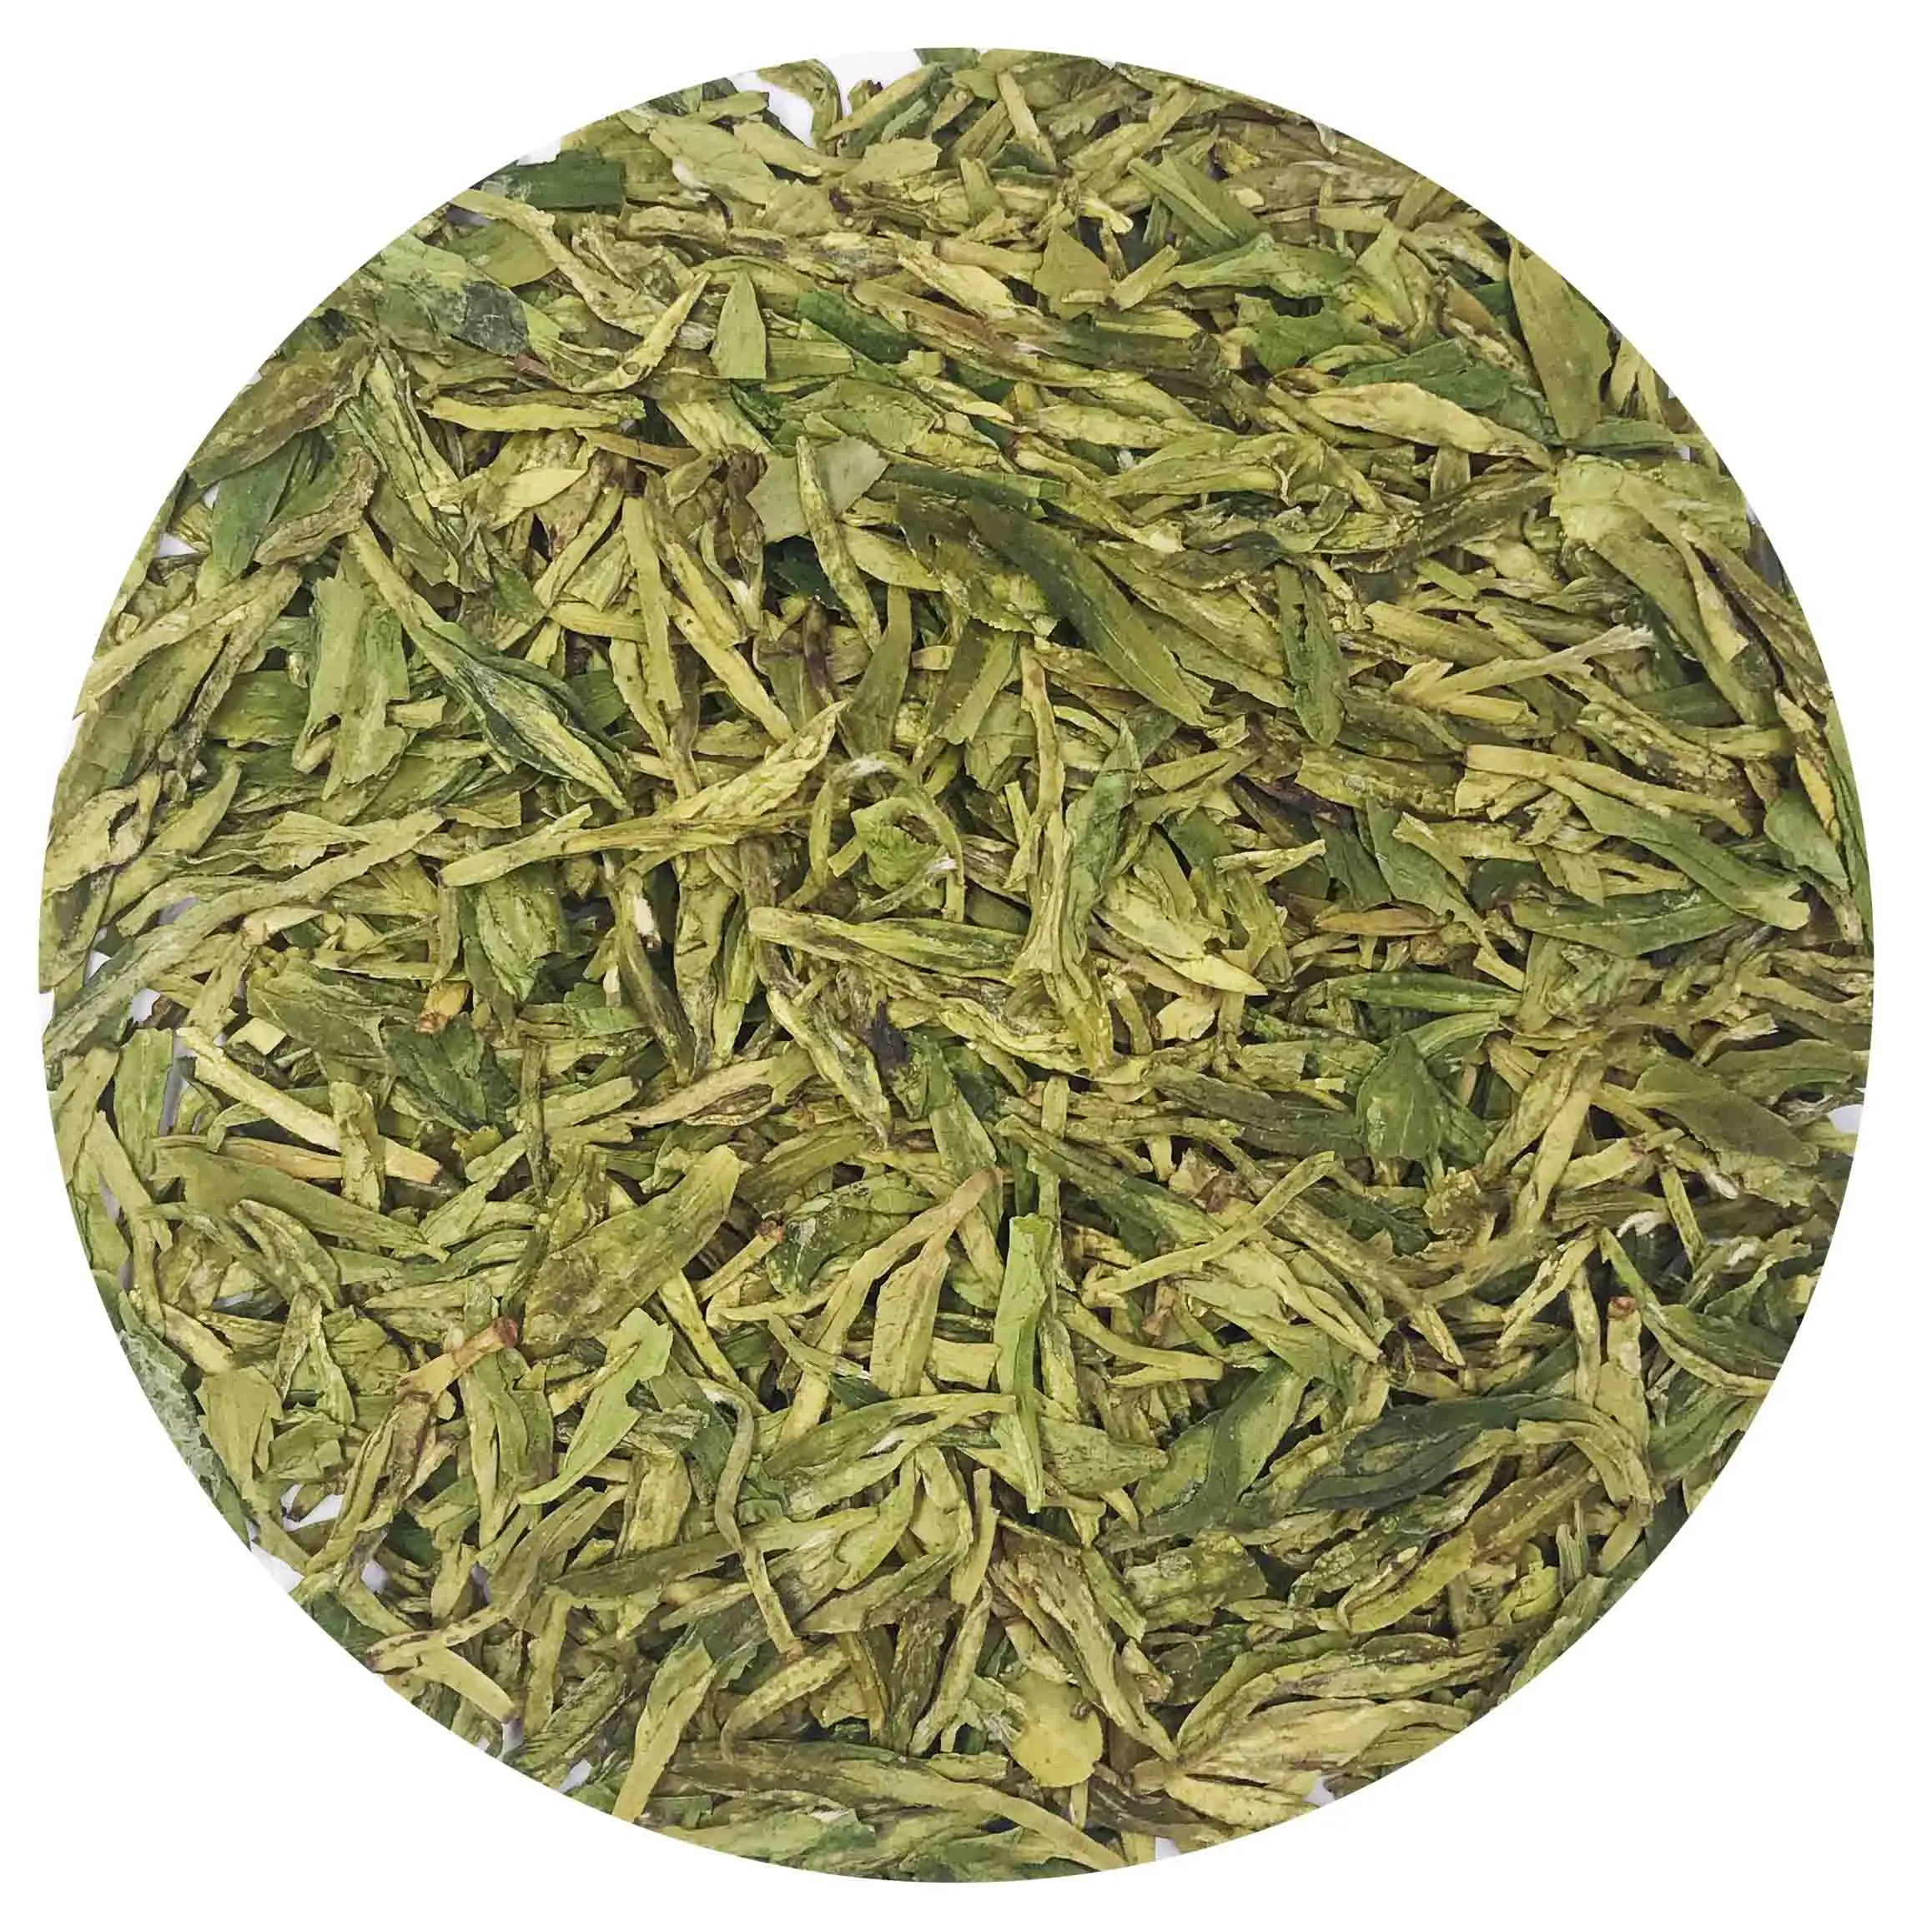 Organic Premium Long Jing West Lake Dragon Well 43 Loose Leaf Green Tea From Zheng Jiang Green Tea-